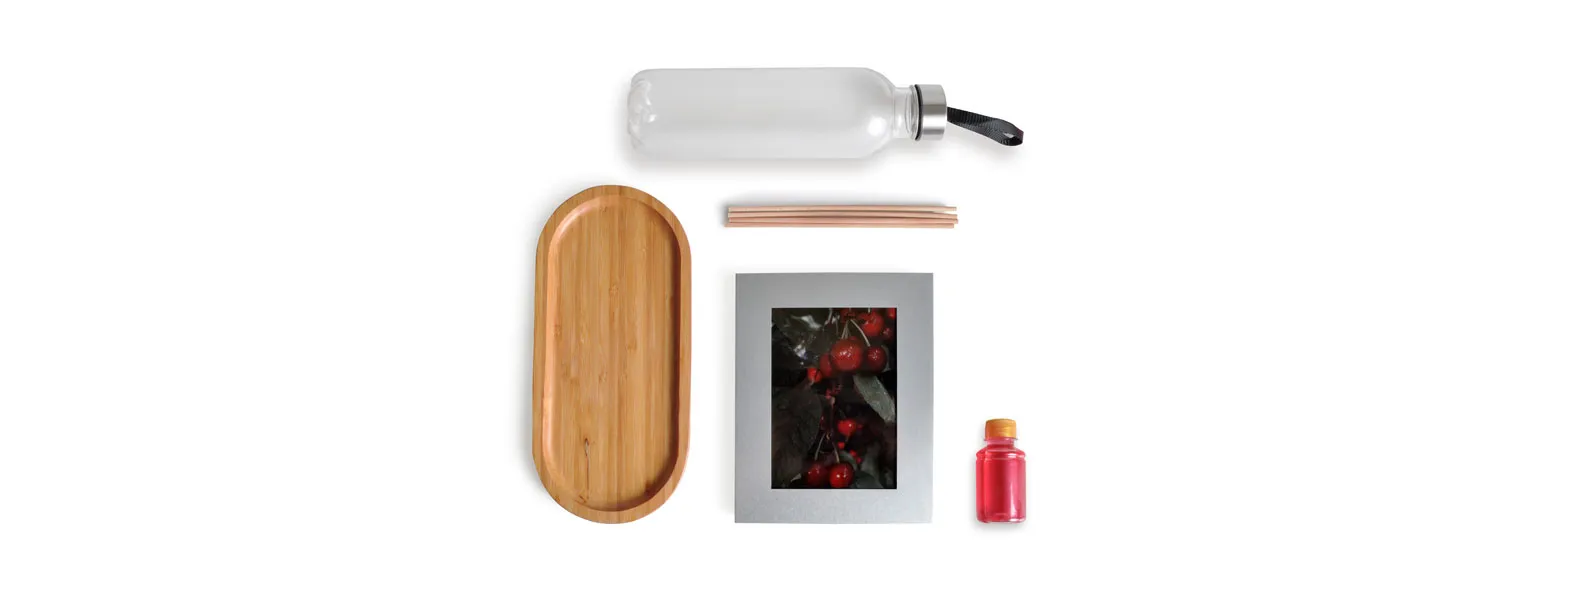 Kit bandeja, aromatizador e acessórios. Composto por bandeja oval em bambu; garrafa transparente em PET; porta-retrato em alumínio; aromatizador de ambiente com fragrância de cereja e avelã.